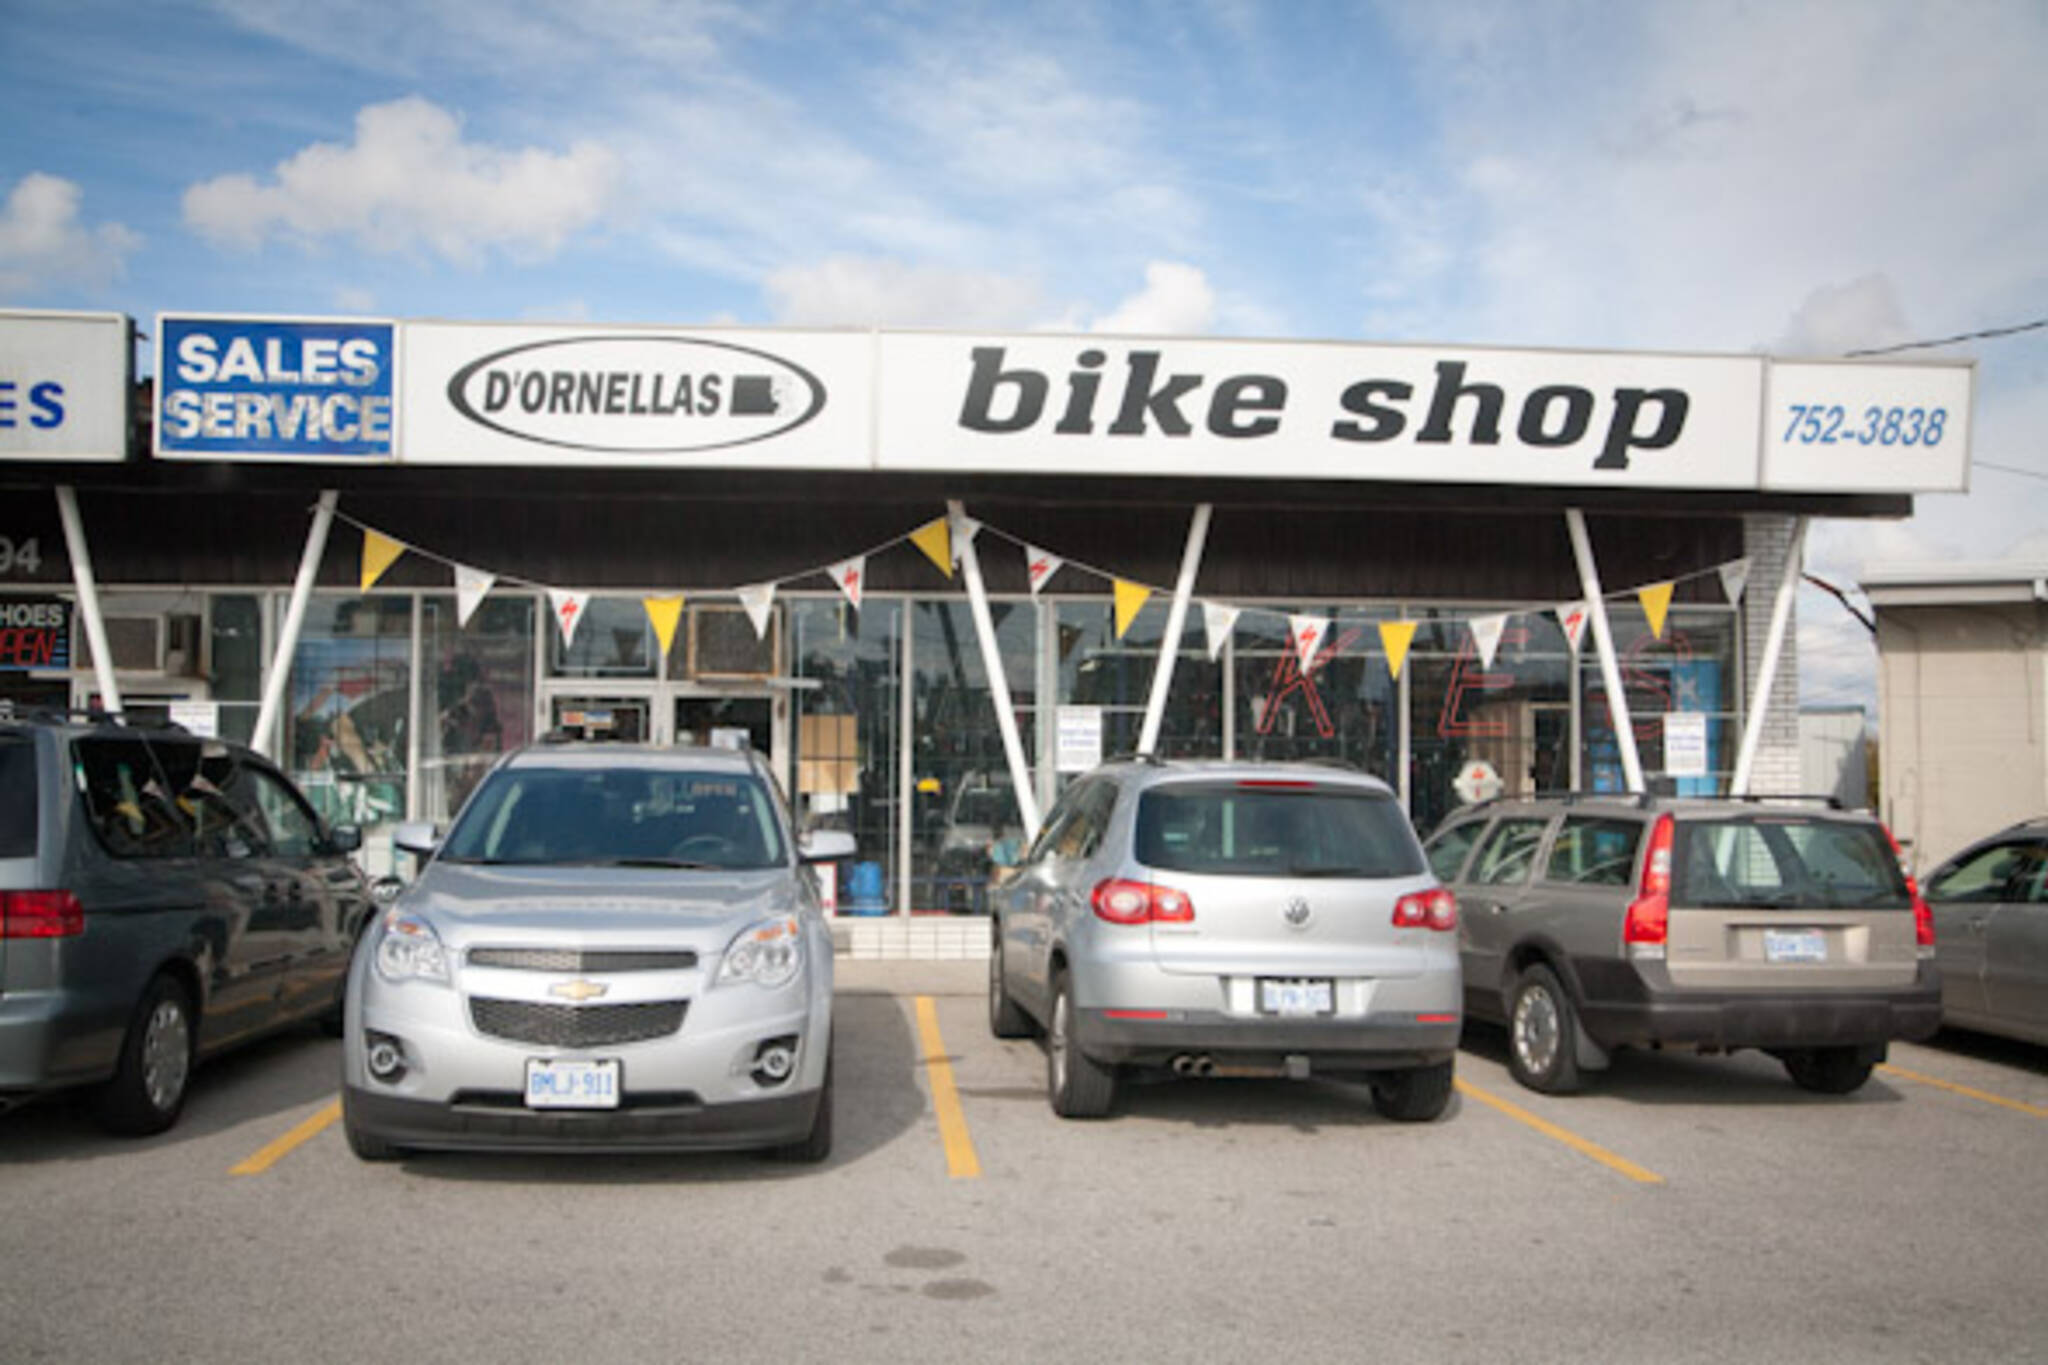 D'Ornellas Bike Shop